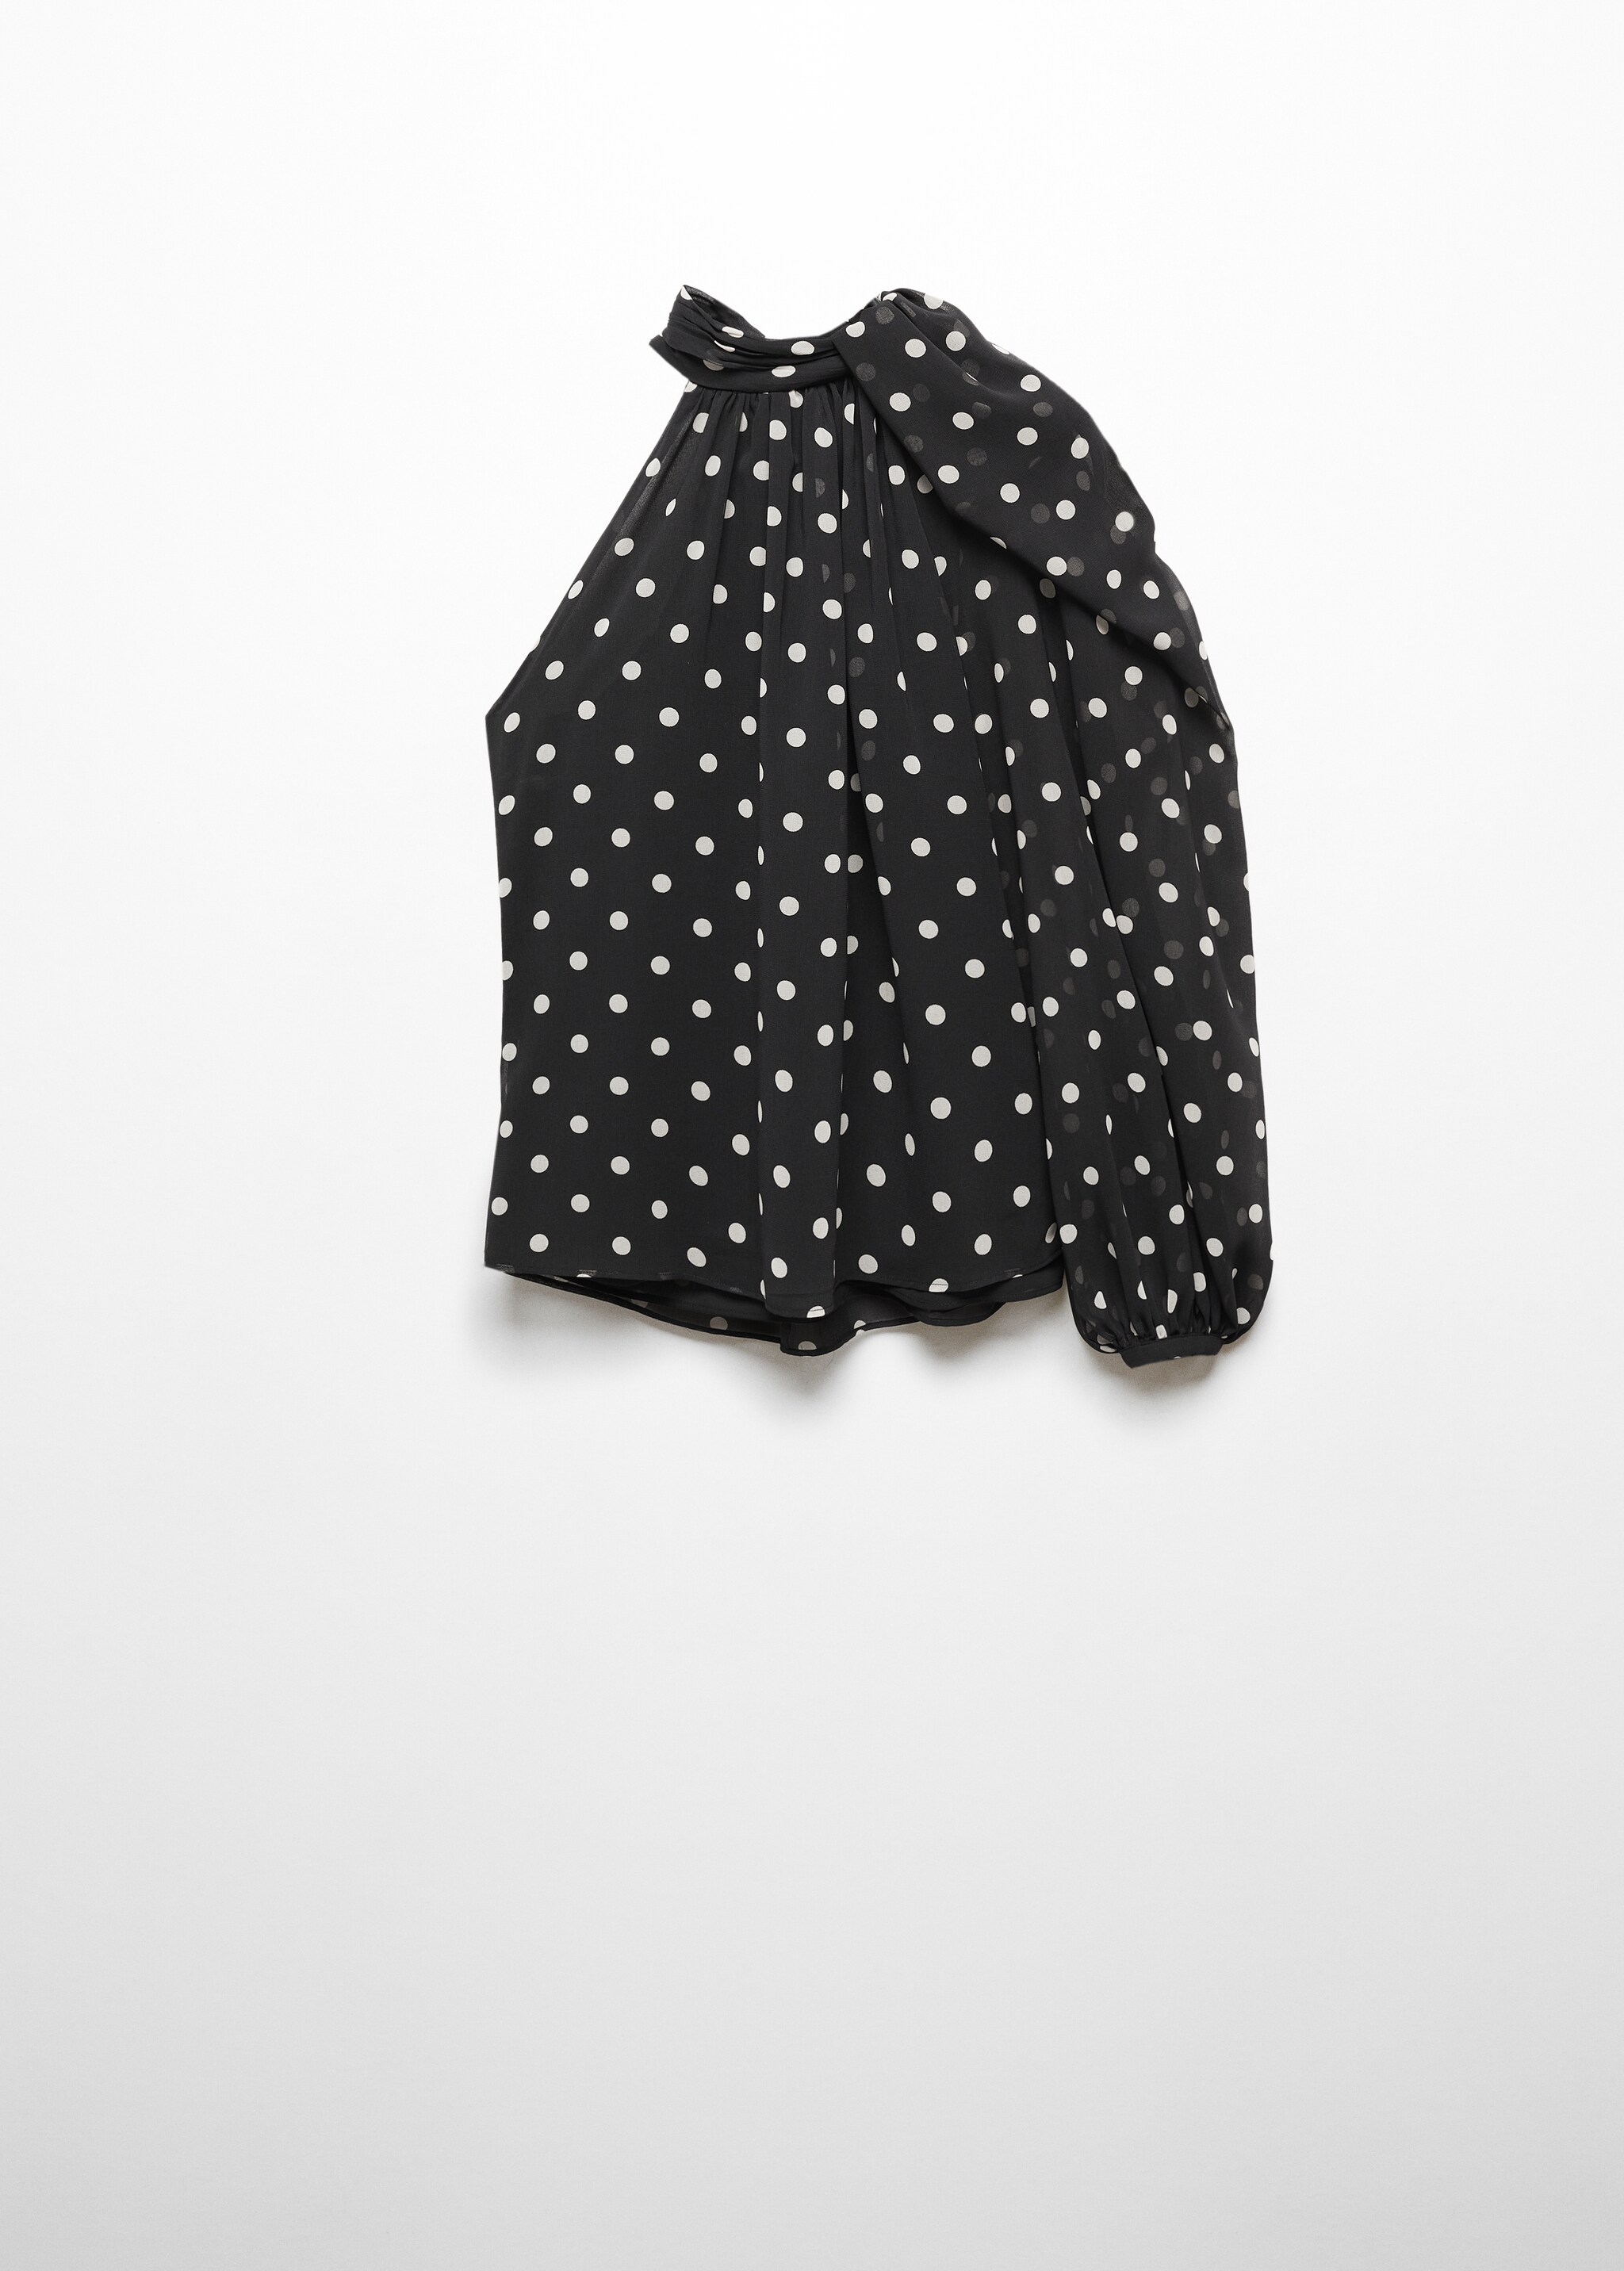 Asymmetric polka dot blouse - Article without model